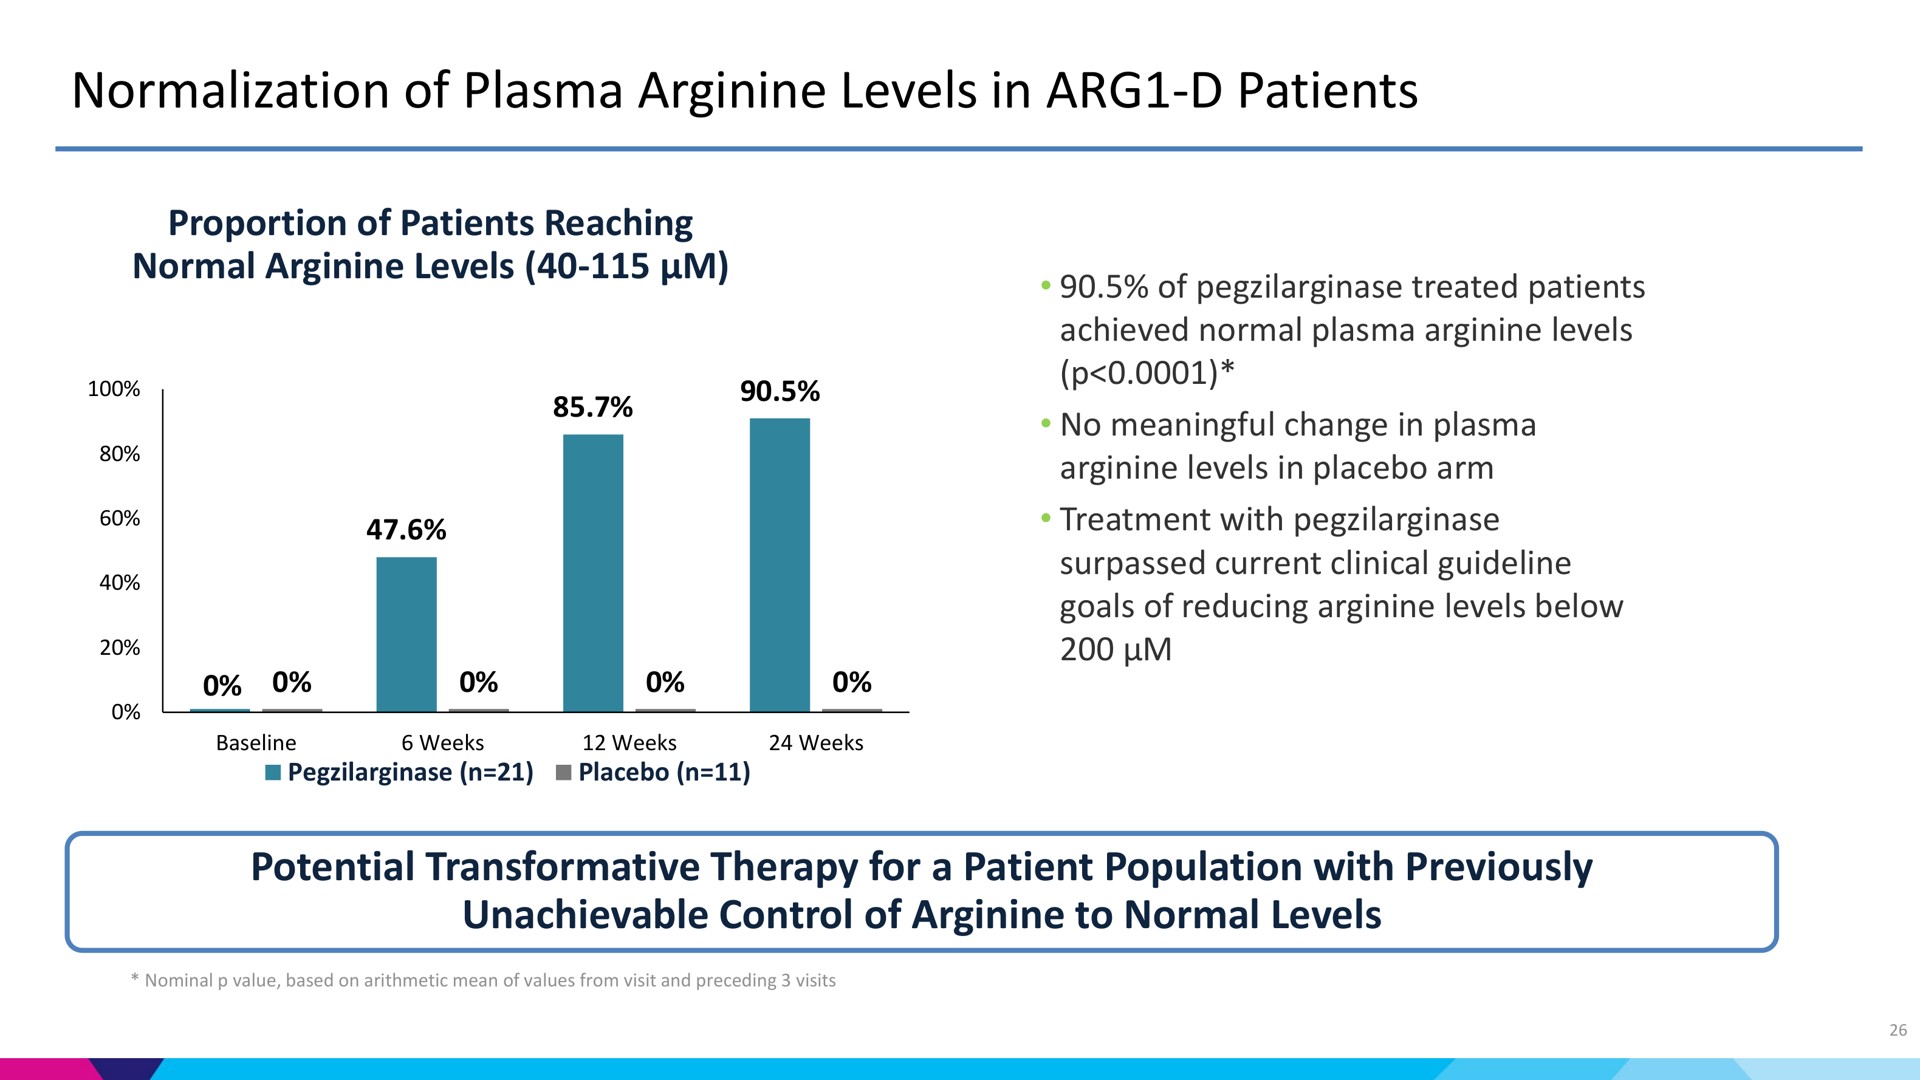 normalization of plasma arginine levels in patients | Aeglea BioTherapeutics